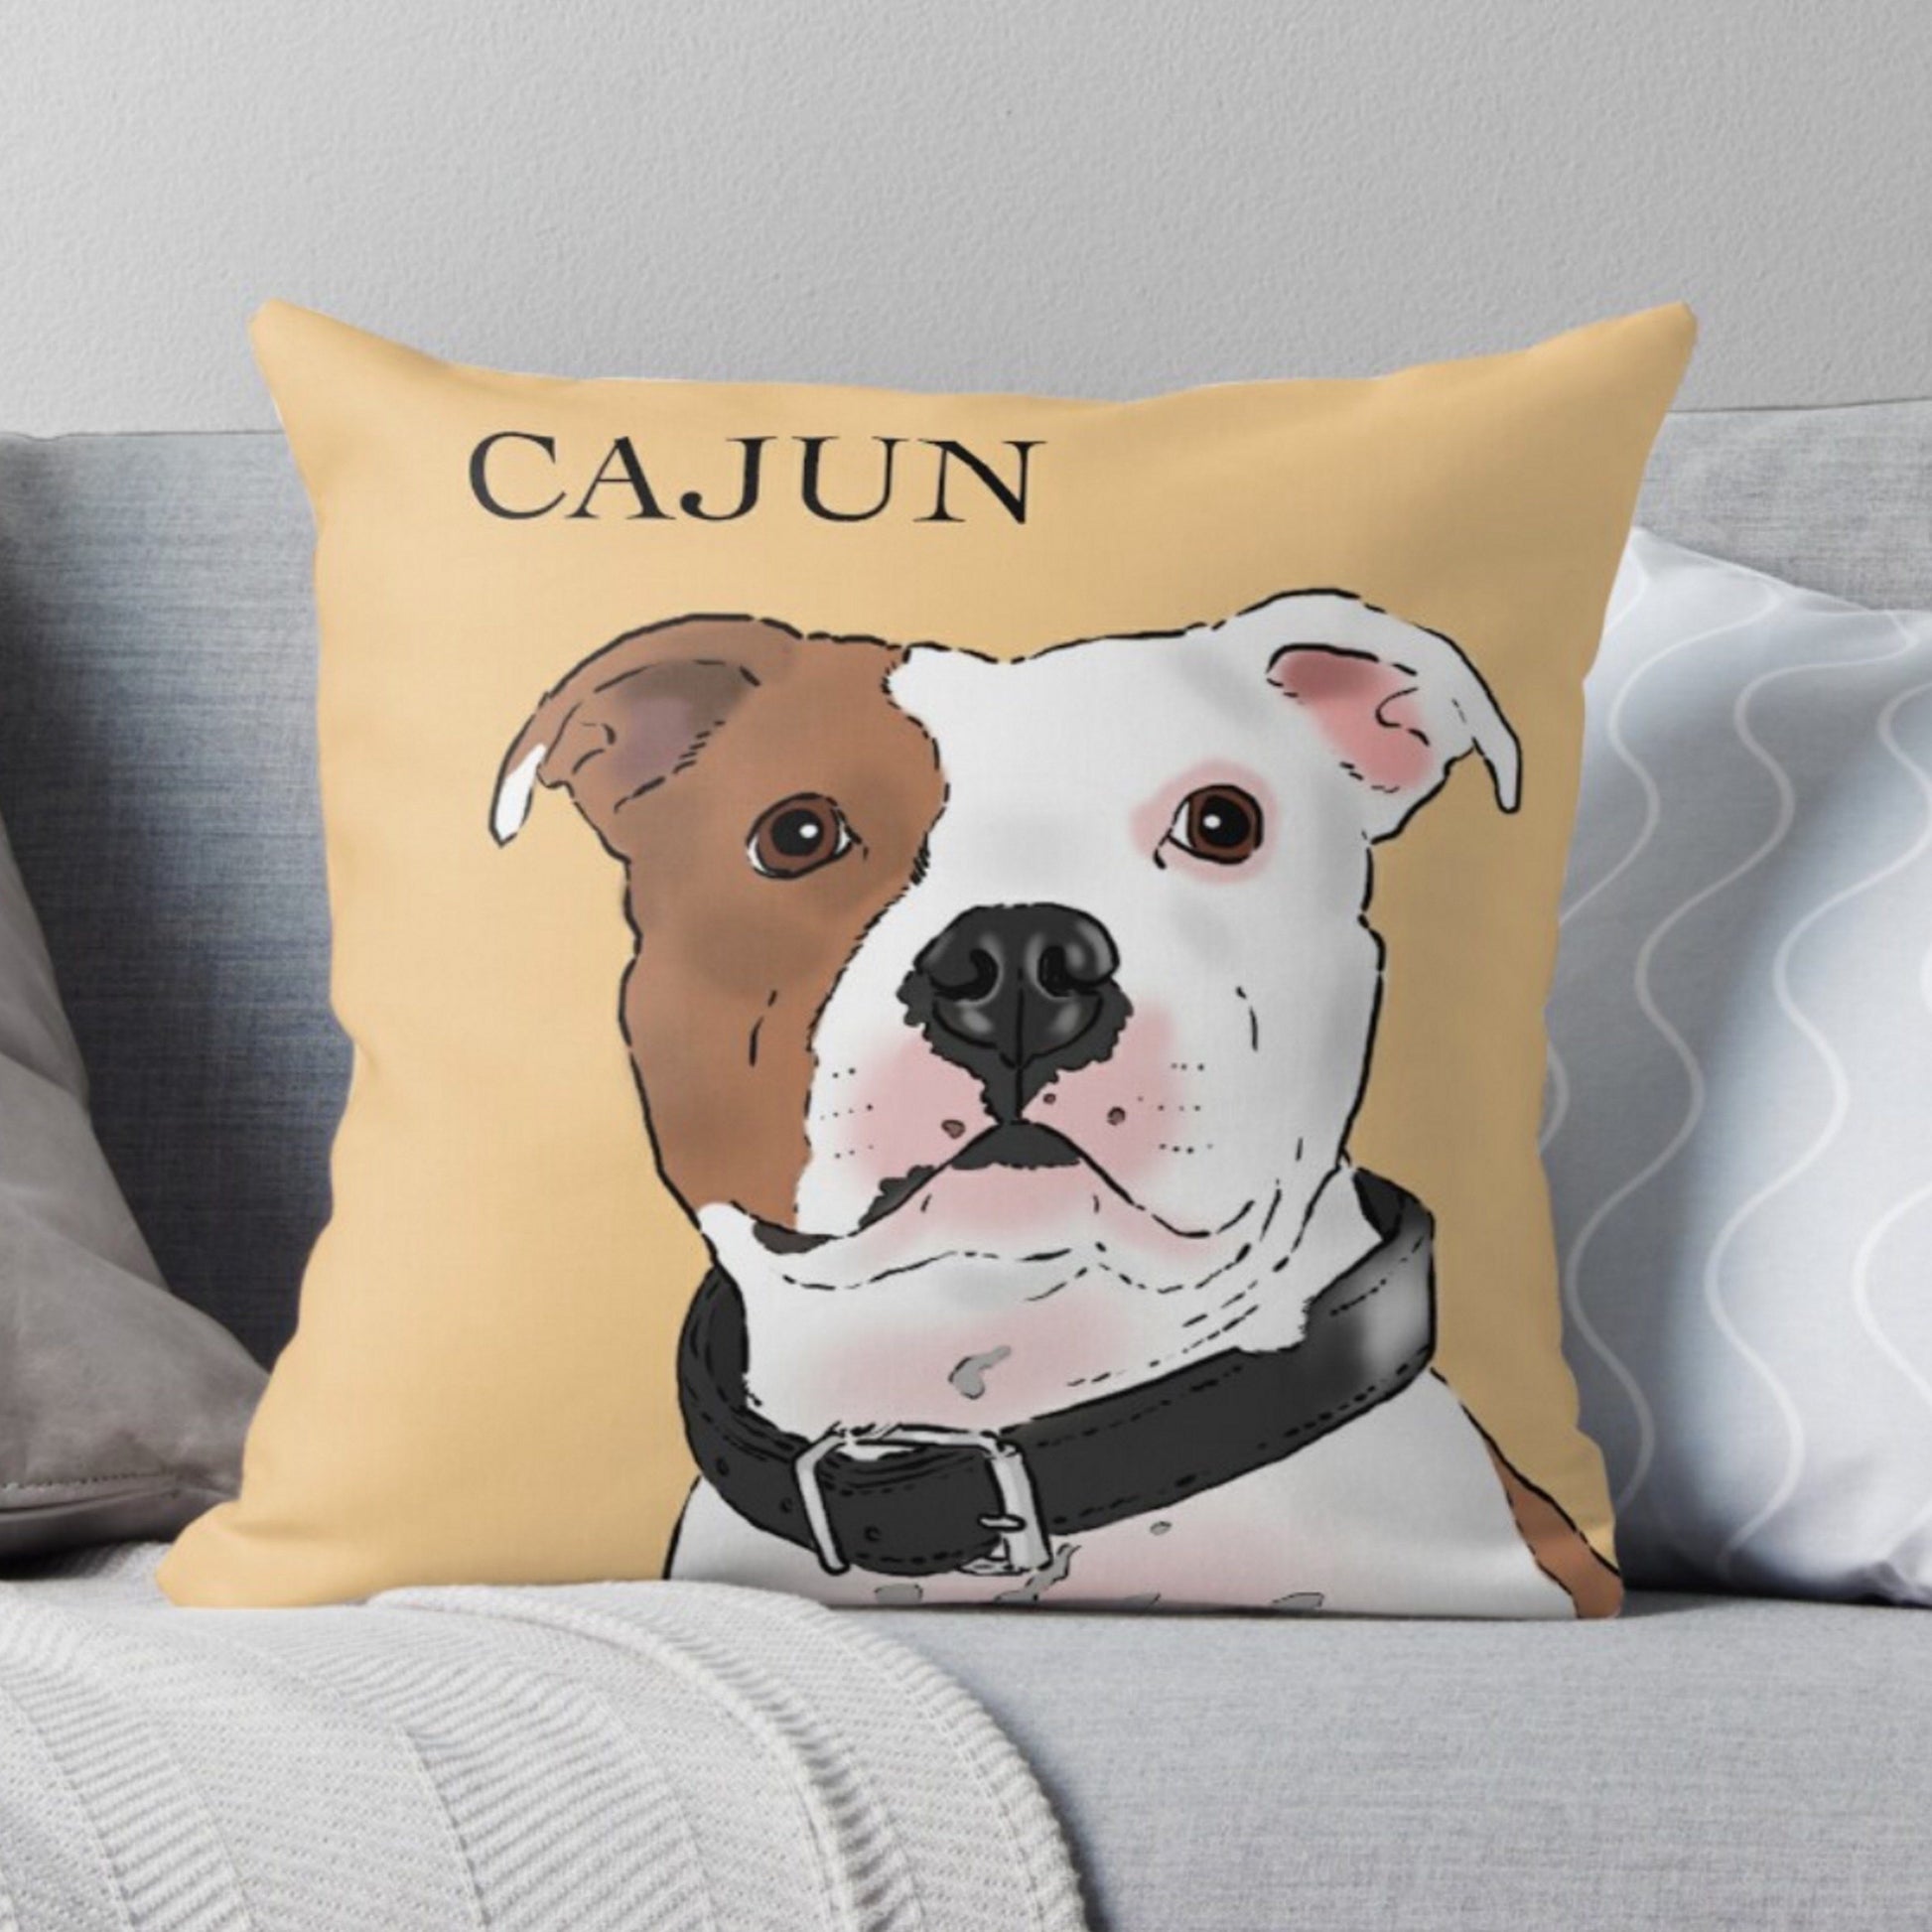 https://sockdogs.com/cdn/shop/products/pillows-custom-pet-portrait-pillow-18x18-4.jpg?v=1611938333&width=1946